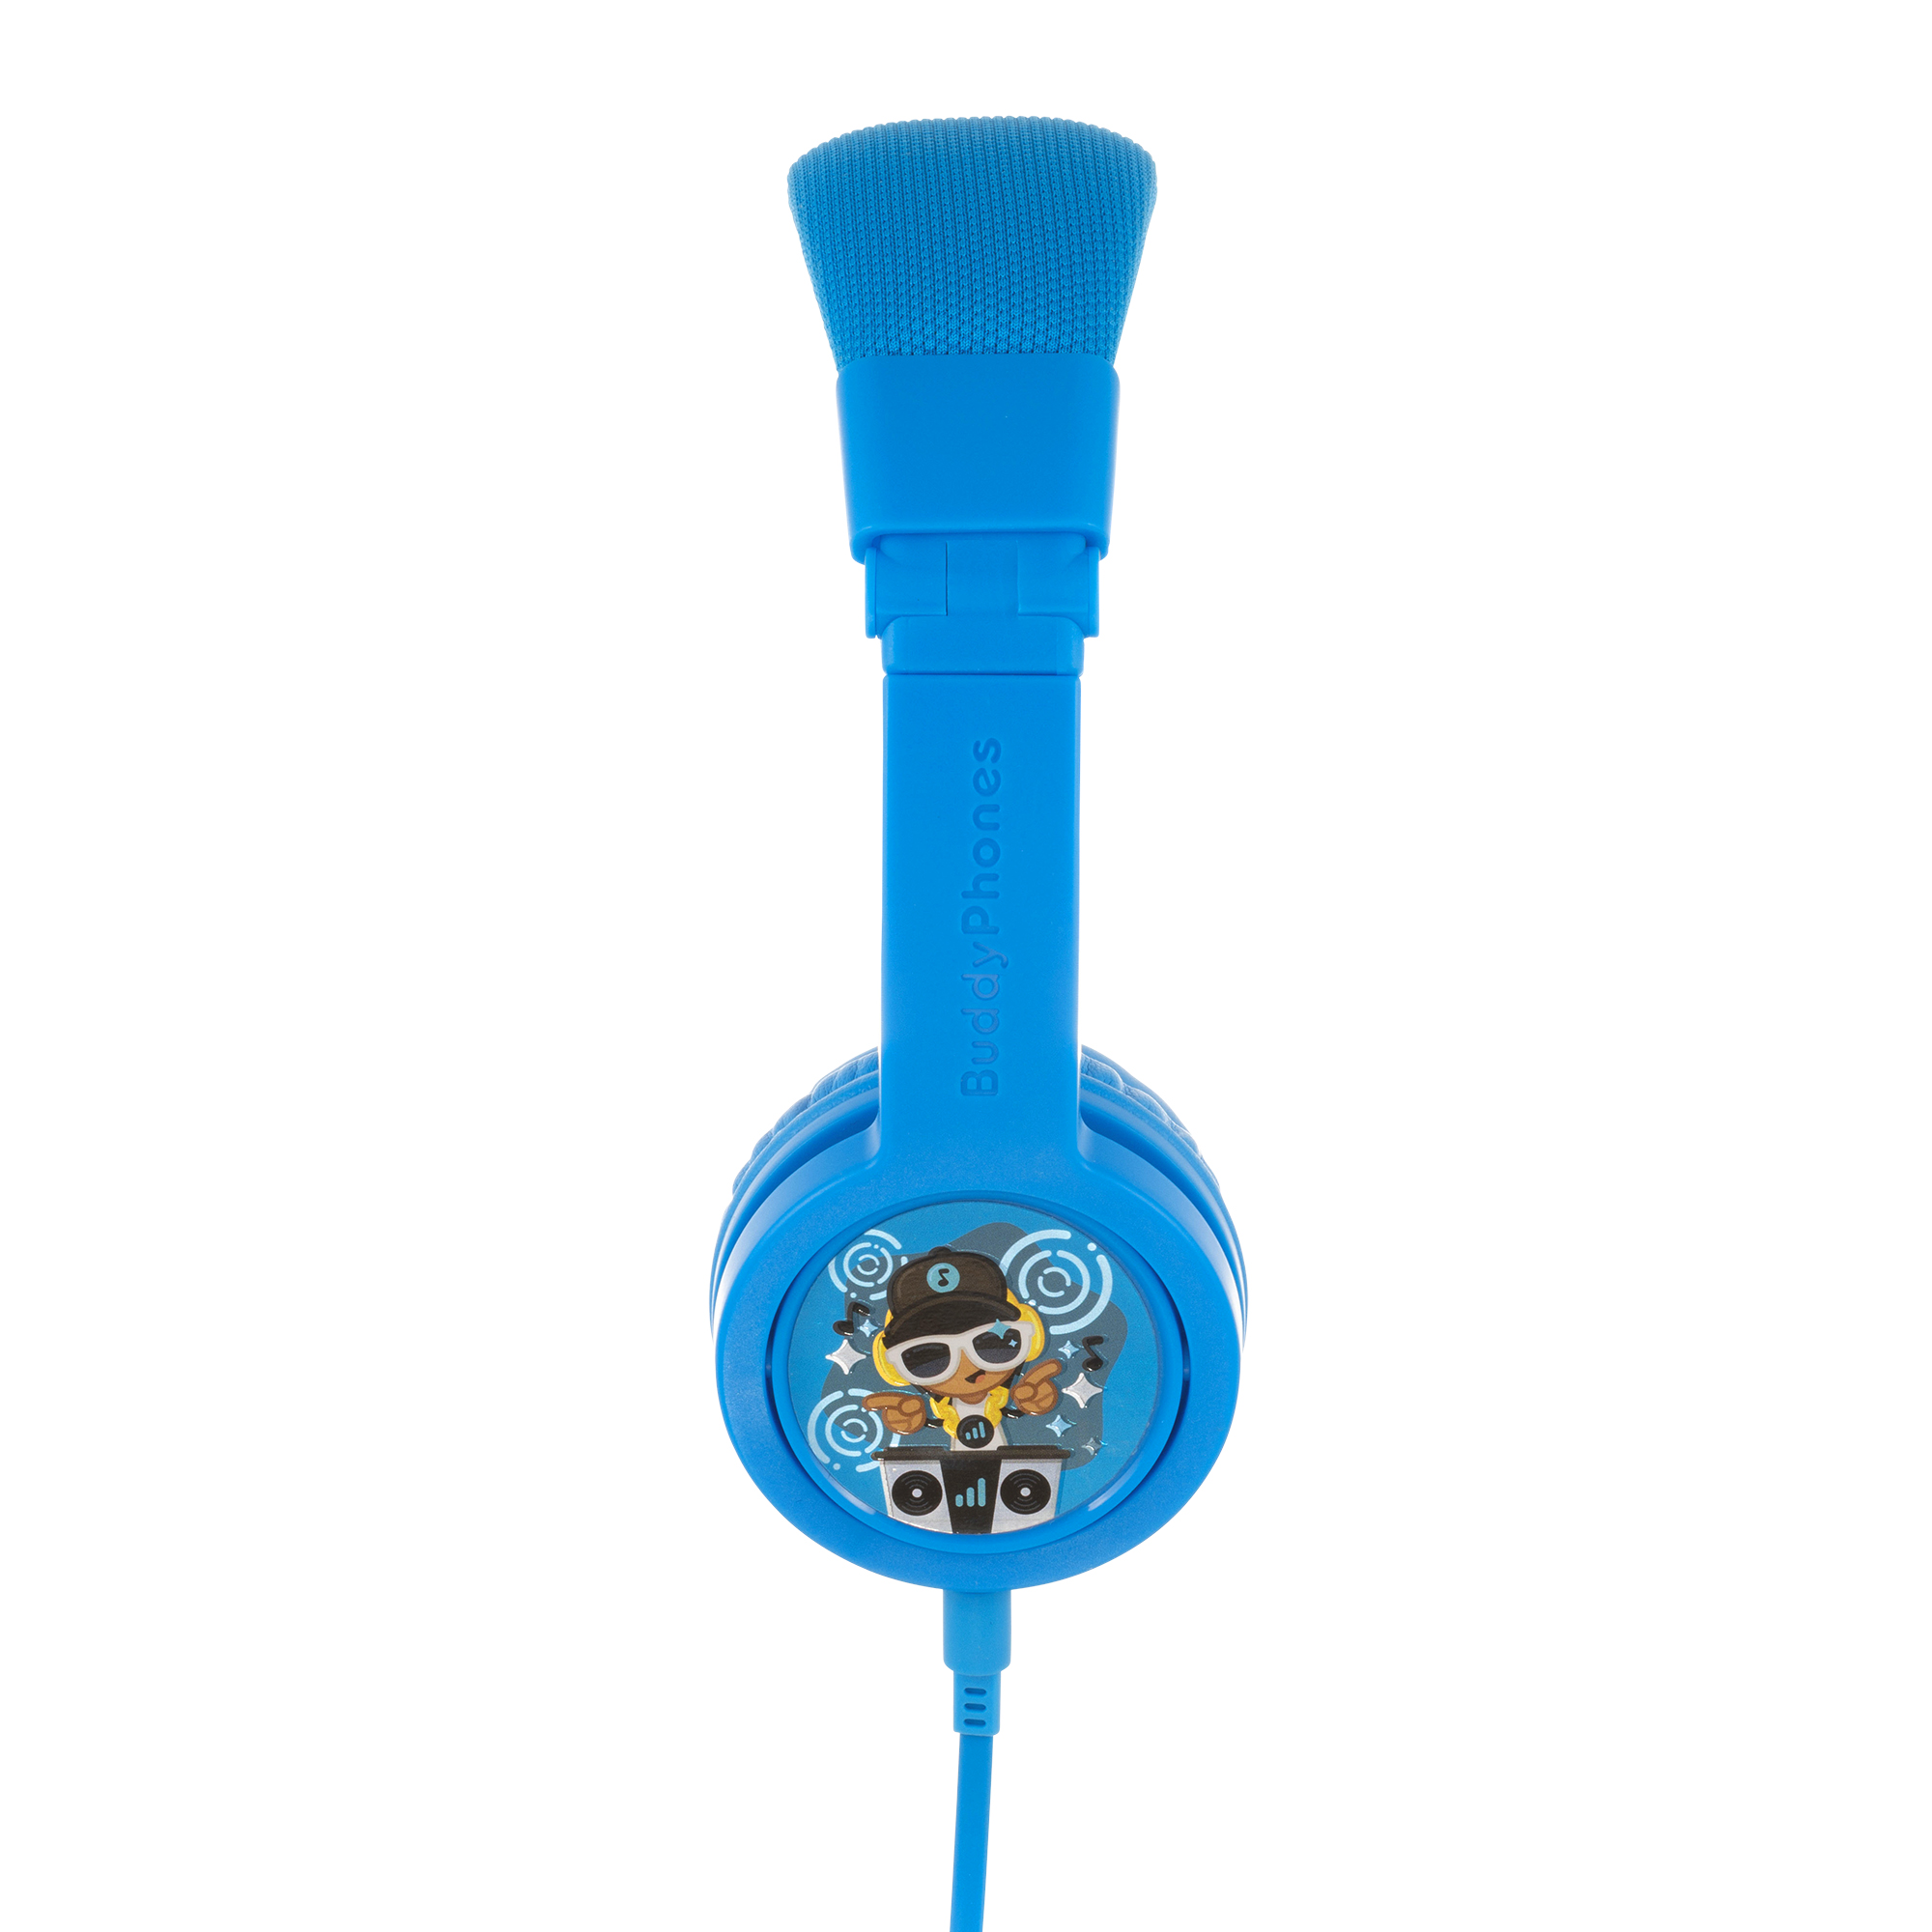 Kopfhörer BUDDYPHONES Blau Explore Lautstärkebegrenzende Plus On-ear Kinder-Kopfhörer, Kinder